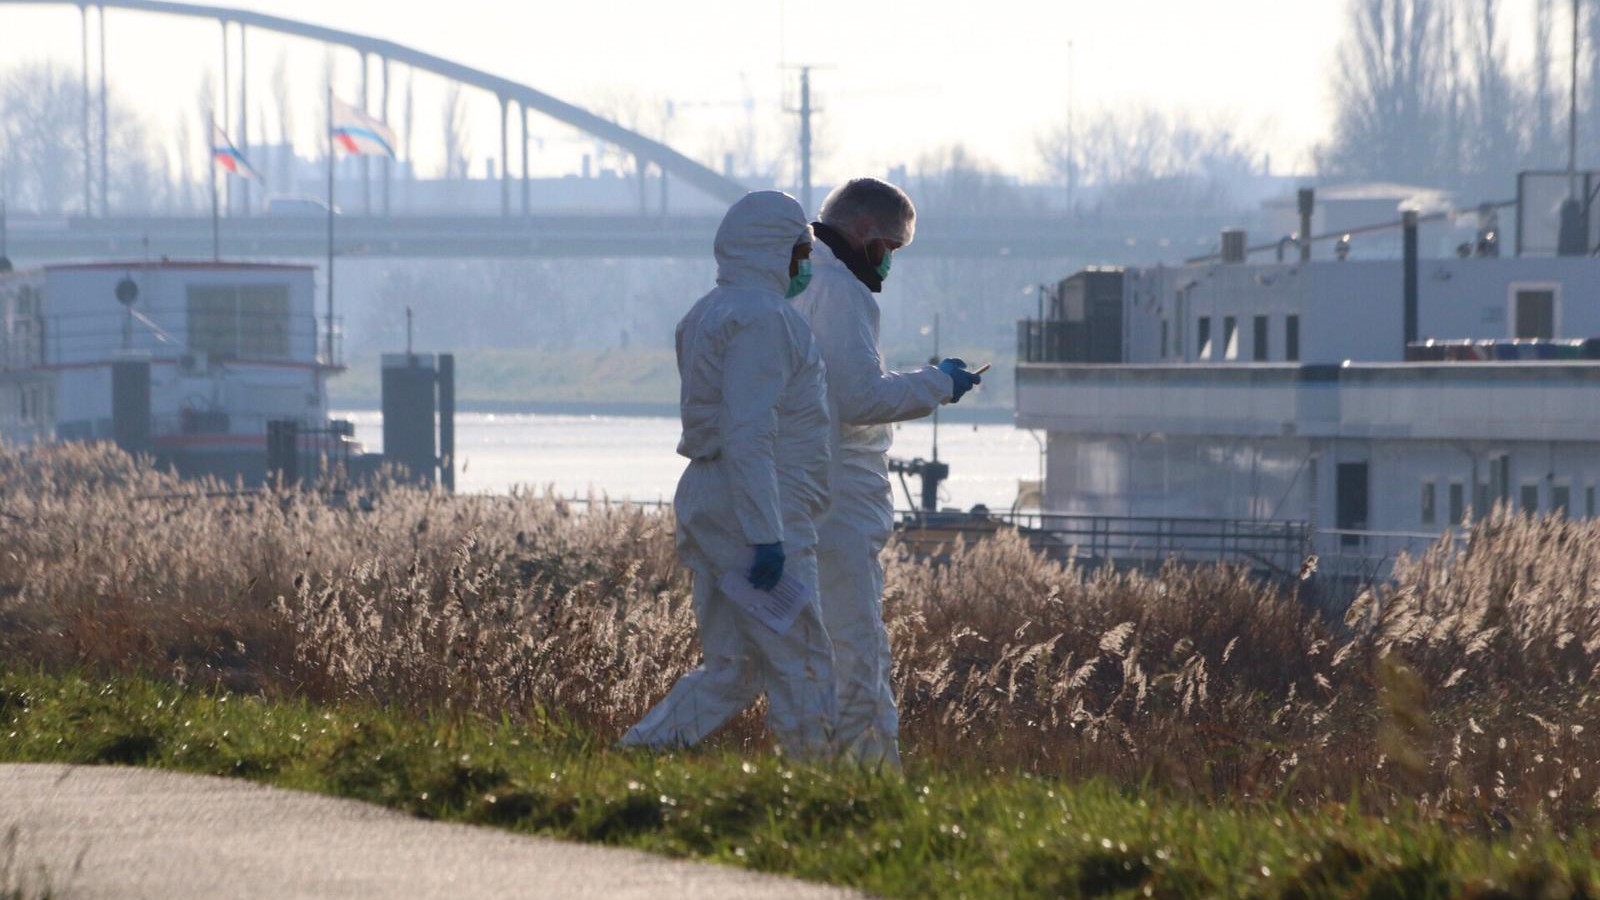 العثور على بقايا بشرية داخل حقيبة في المياه بأمستردام